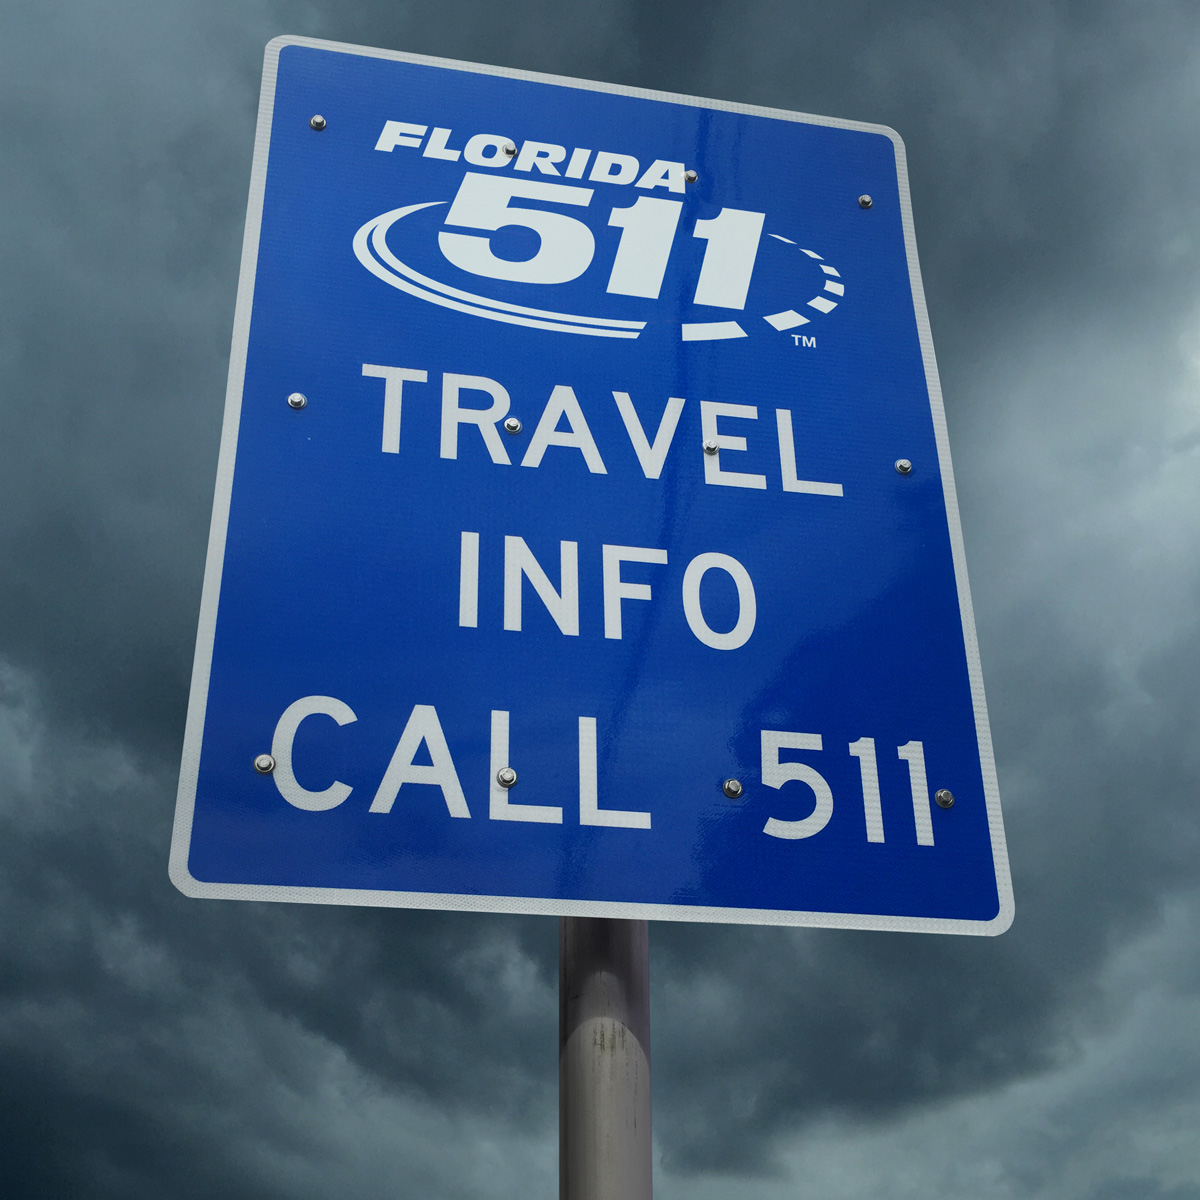 Pour les voyageurs d'affaires qui circulent en Floride en ce début juin, voilà une info qui peut être utile /crédit photo F511